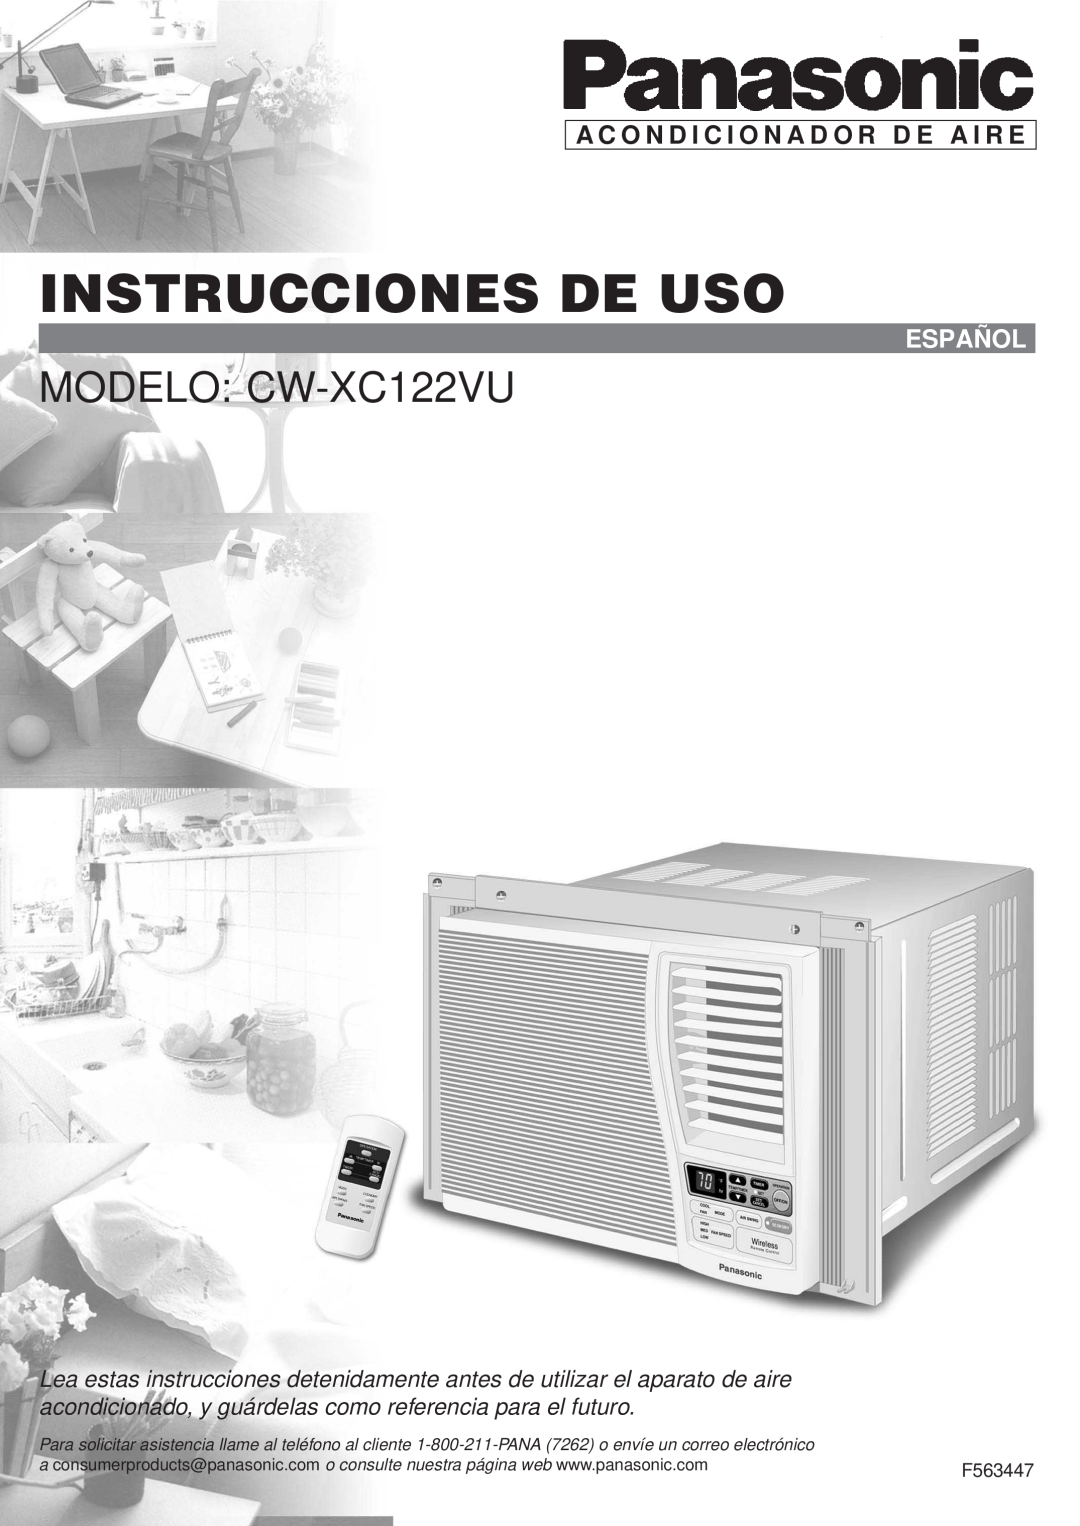 Panasonic manual Instrucciones De Uso, MODELO CW-XC122VU, A C O N D I C I O N A D O R D E A I R E, Español 